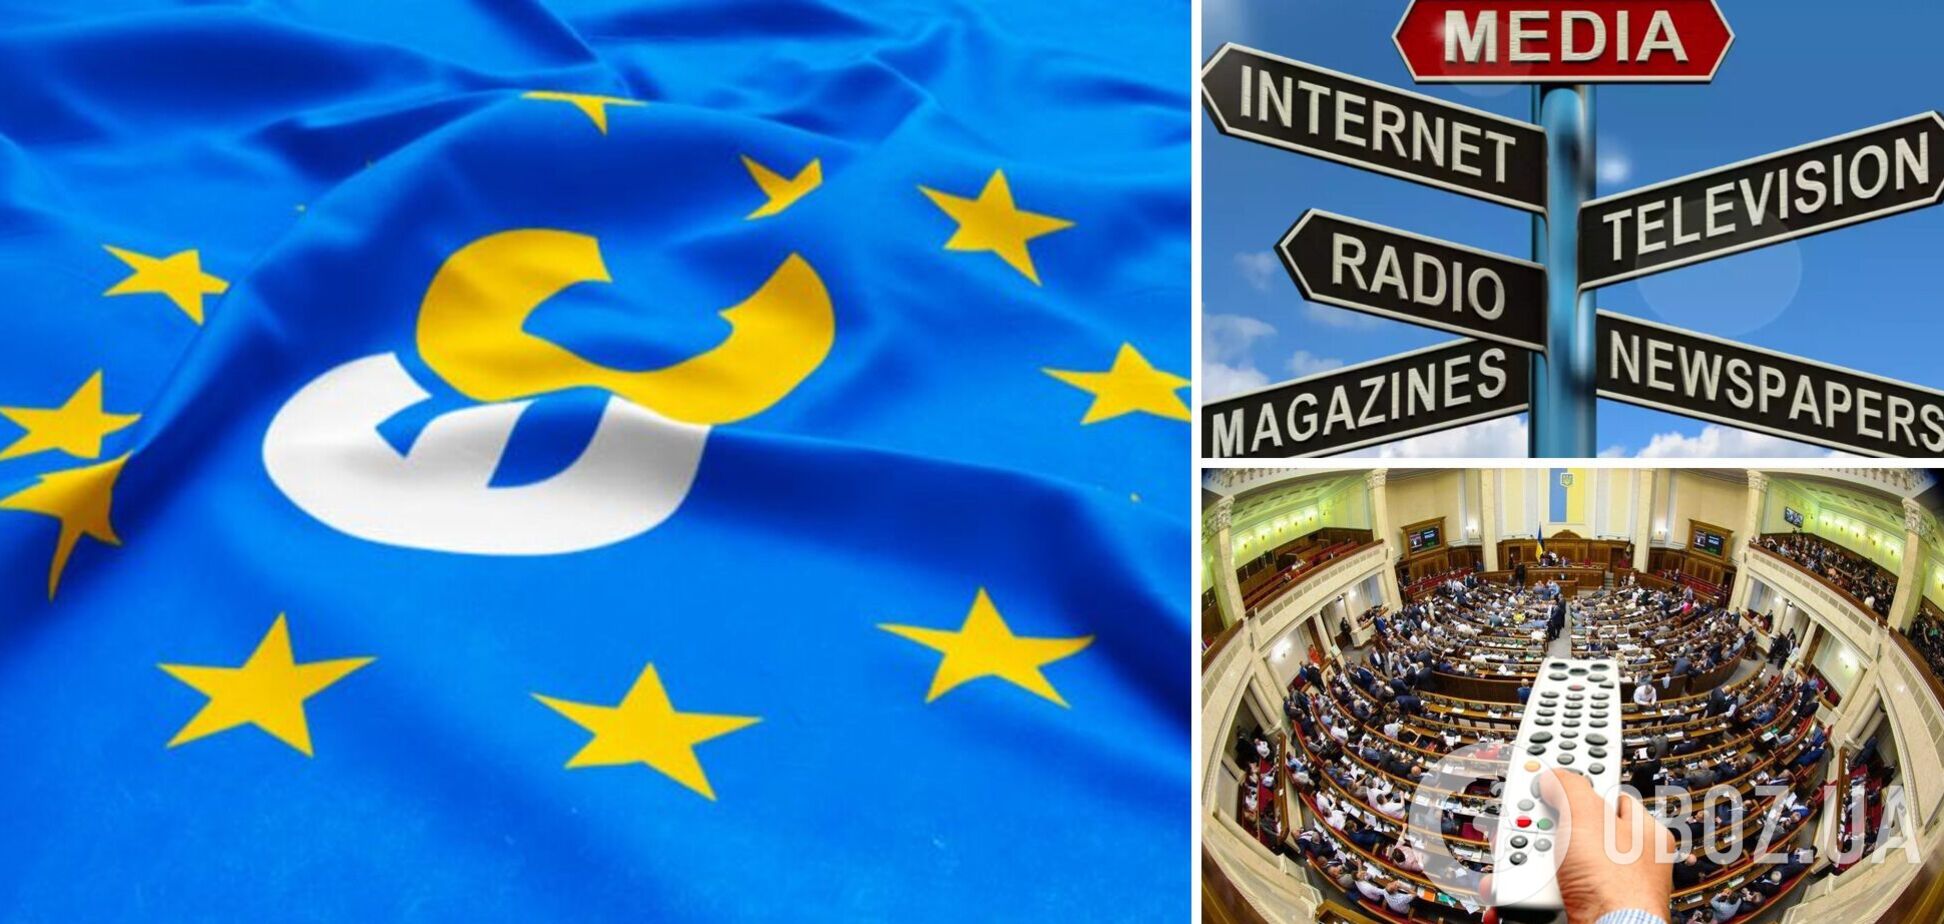 Закон о медиа должен отвечать европейским стандартам, защищать СМИ и свободу слова, – заявление 'Европейской солидарности'